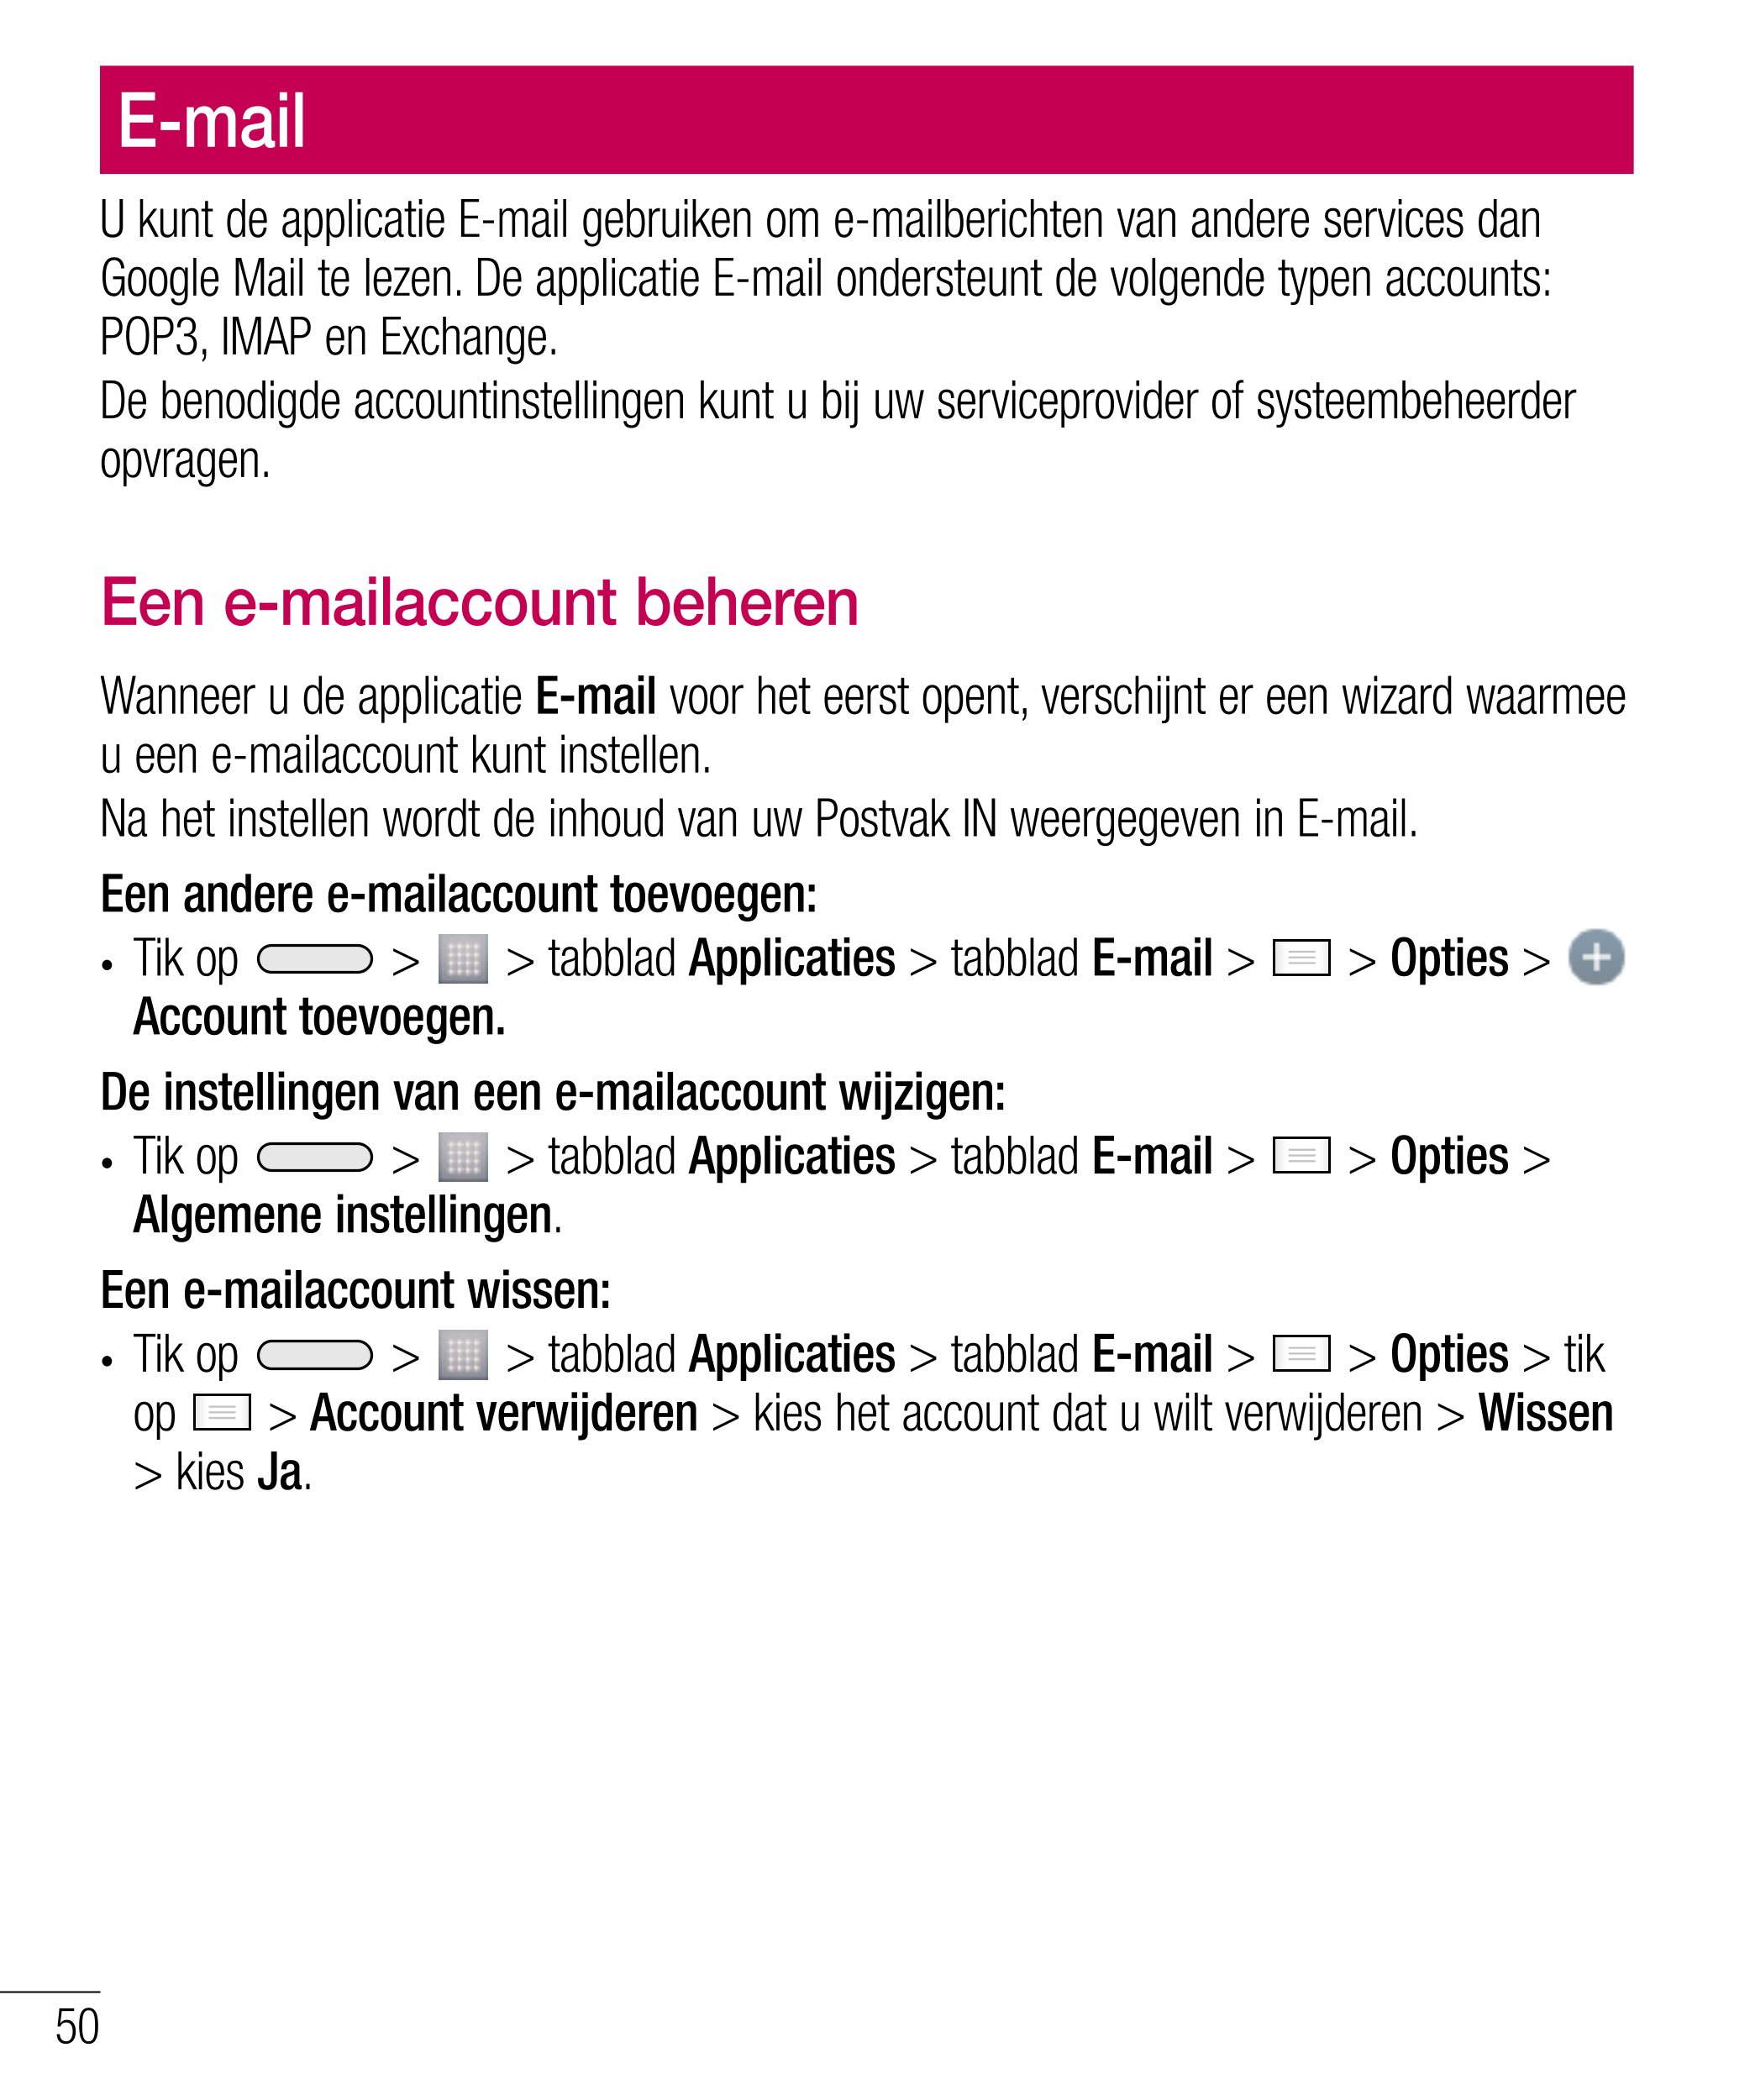 E-mail
U kunt de applicatie E-mail gebruiken om e-mailberichten van andere services dan 
Google Mail te lezen. De applicatie E-m